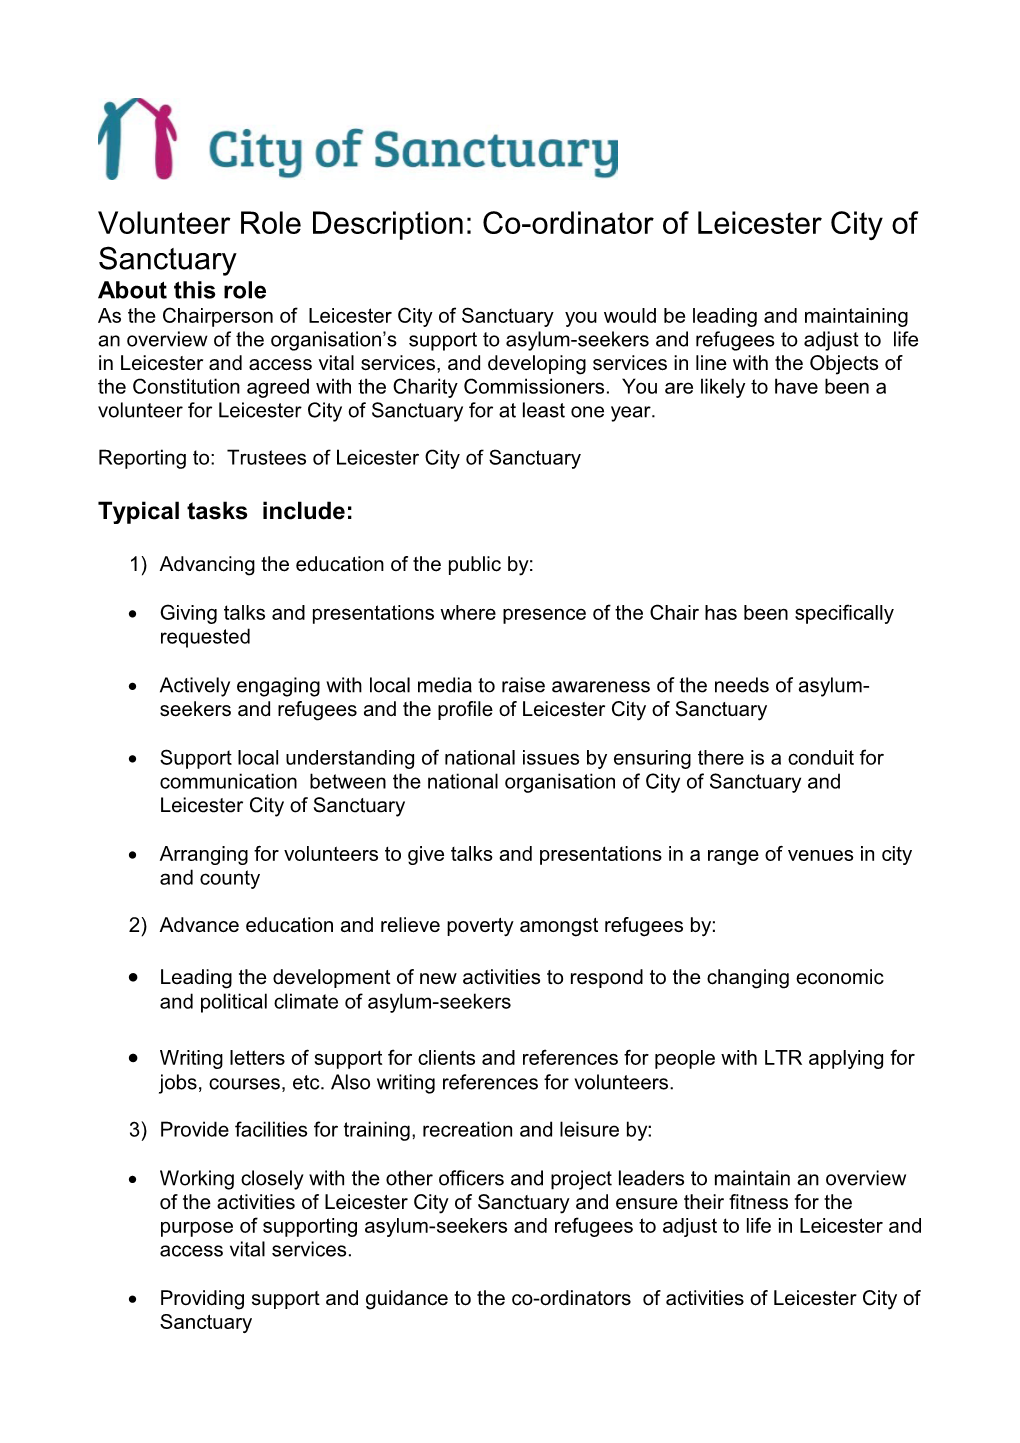 Volunteer Role Description: Co-Ordinator of Leicester City of Sanctuary